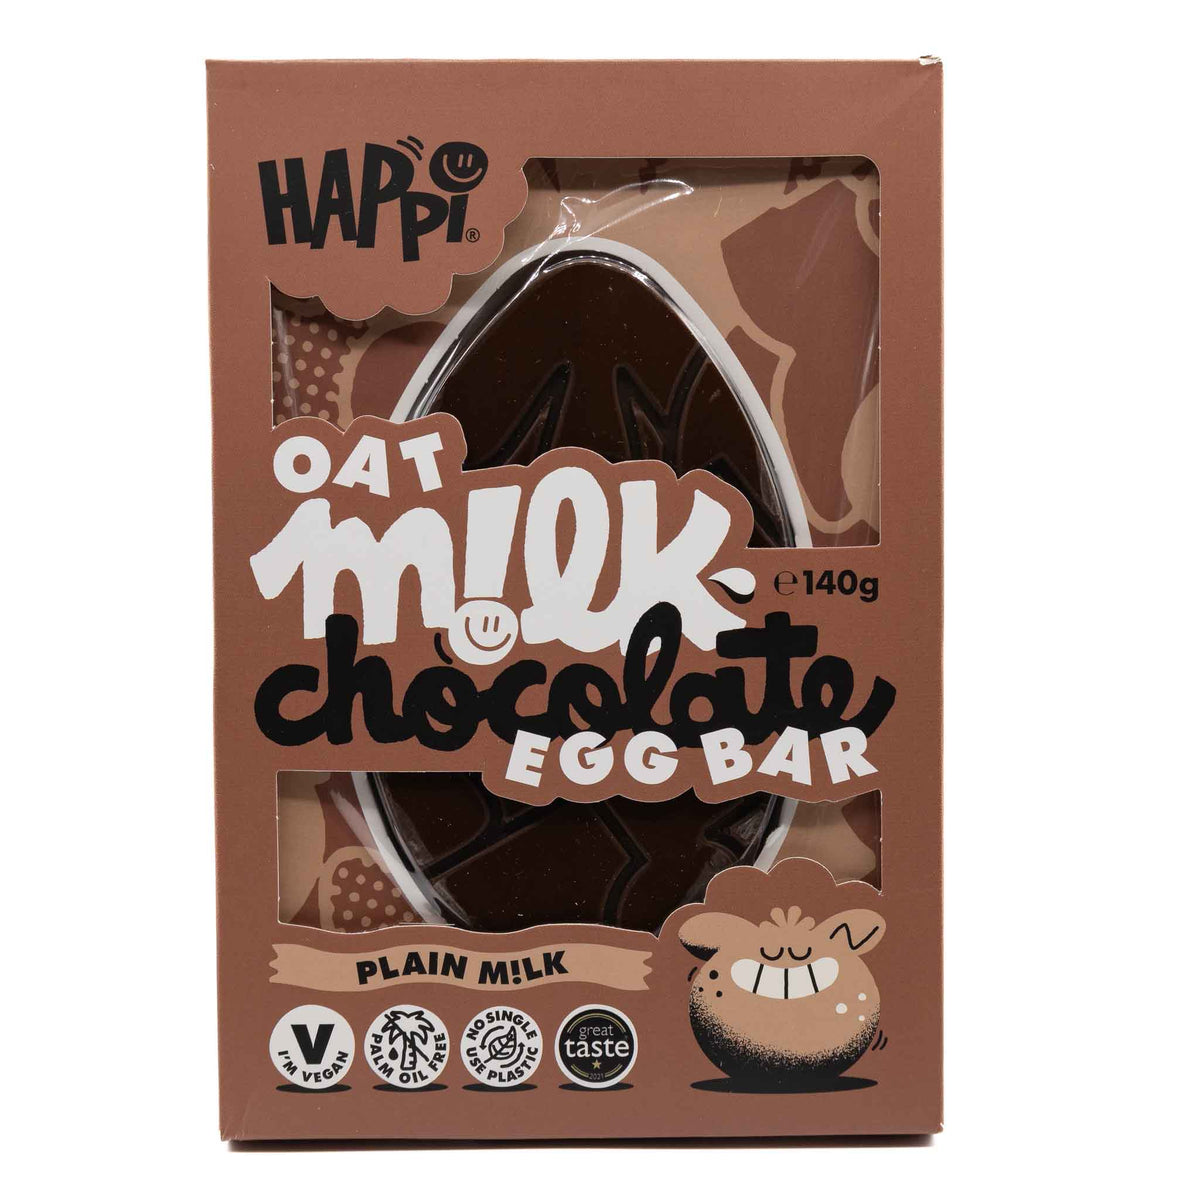 Happi Chocolate Egg Bar Plain